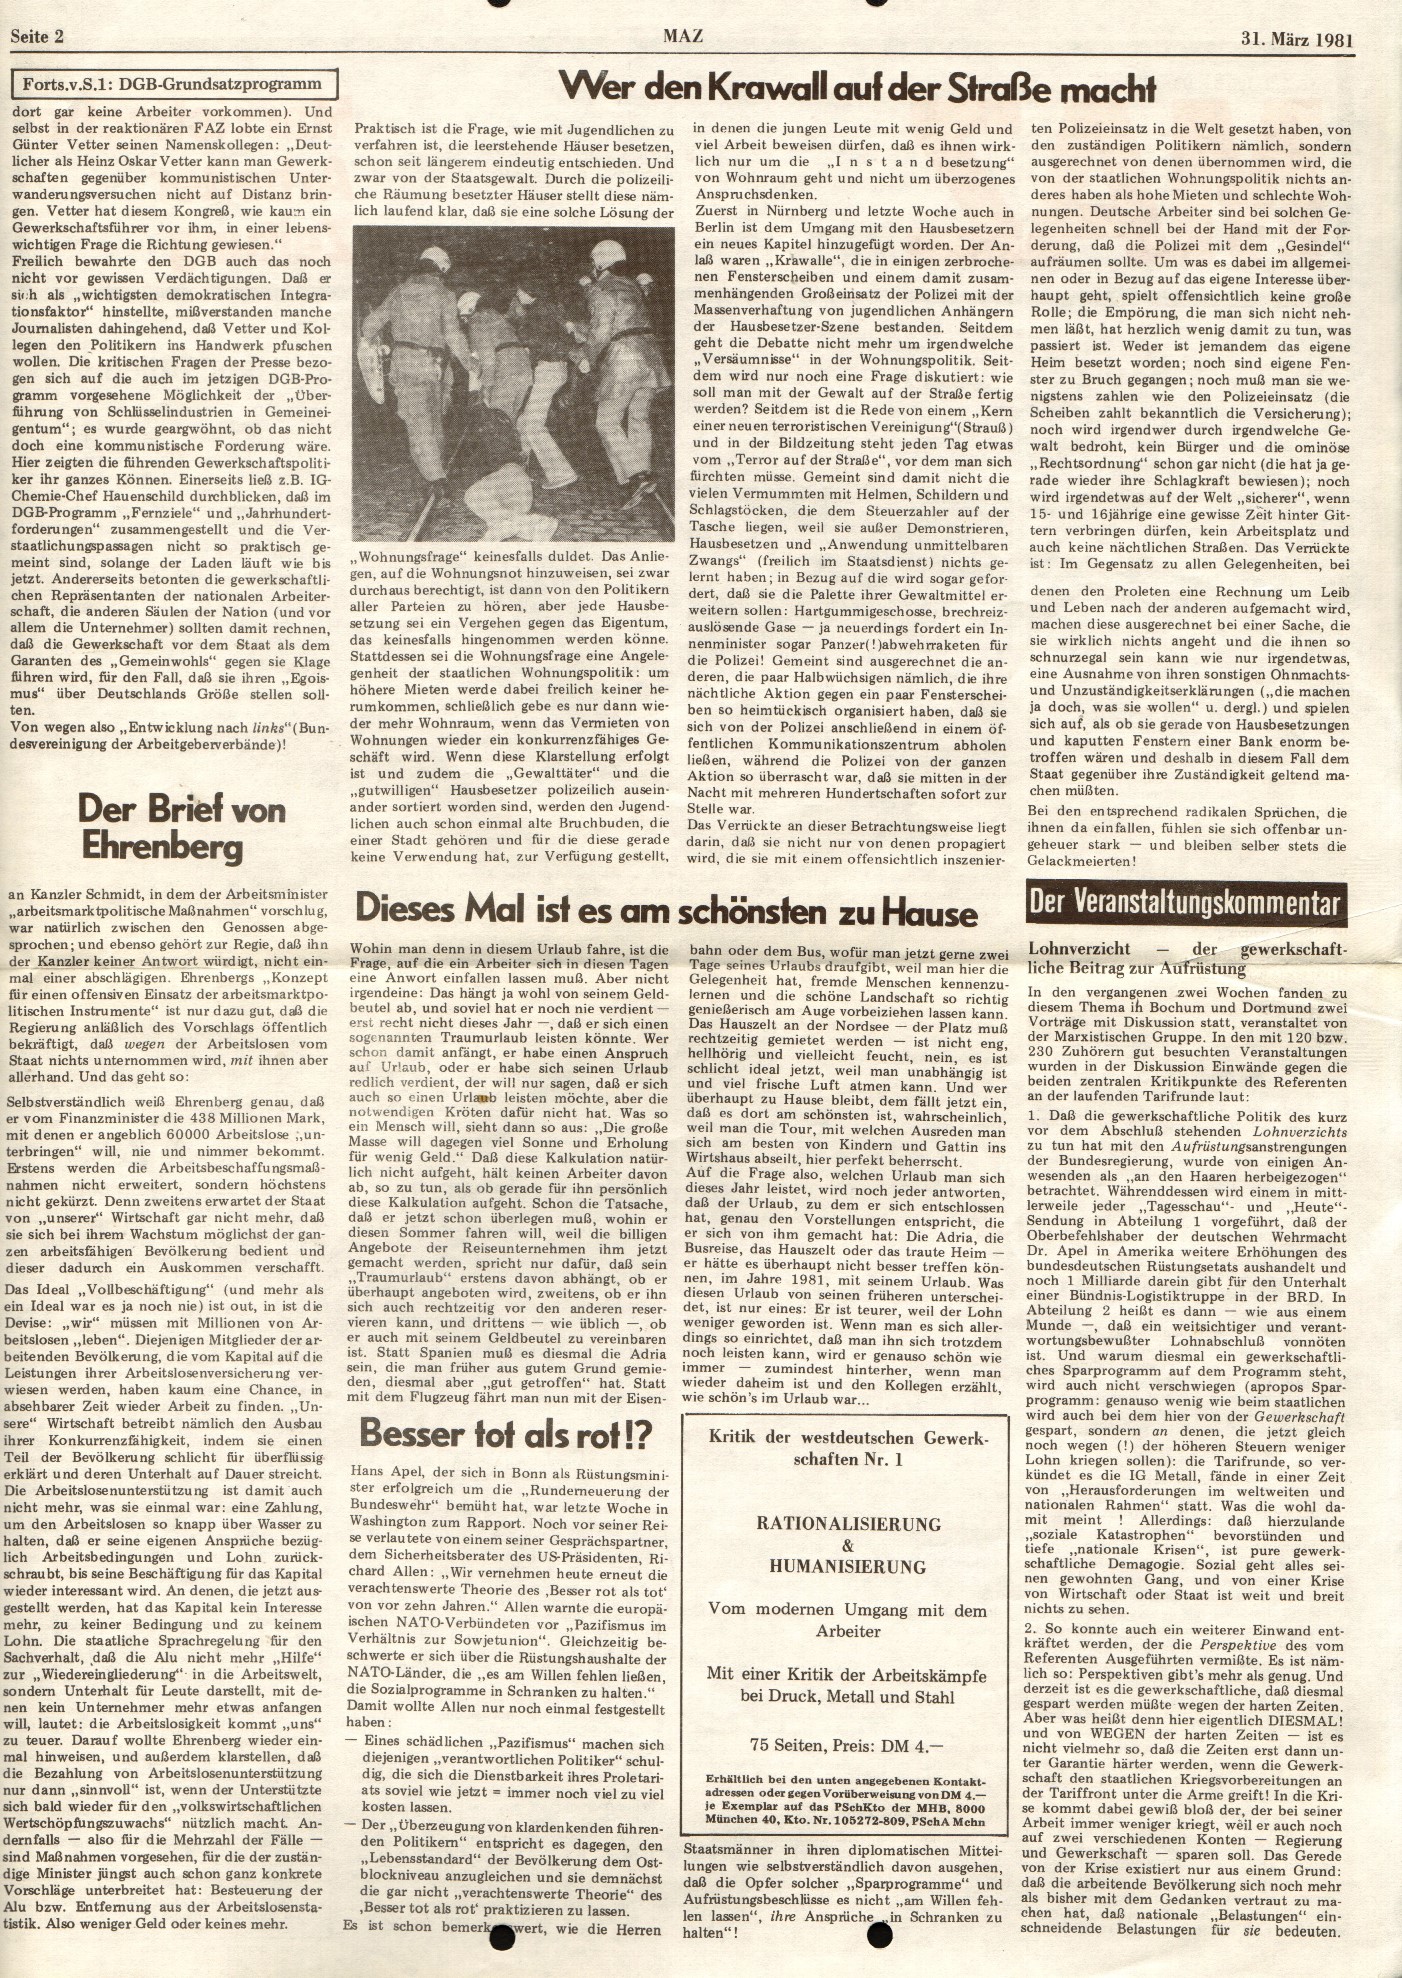 Ruhrgebiet_MG_Marxistische_Arbeiterzeitung_19810331_BoDo_02